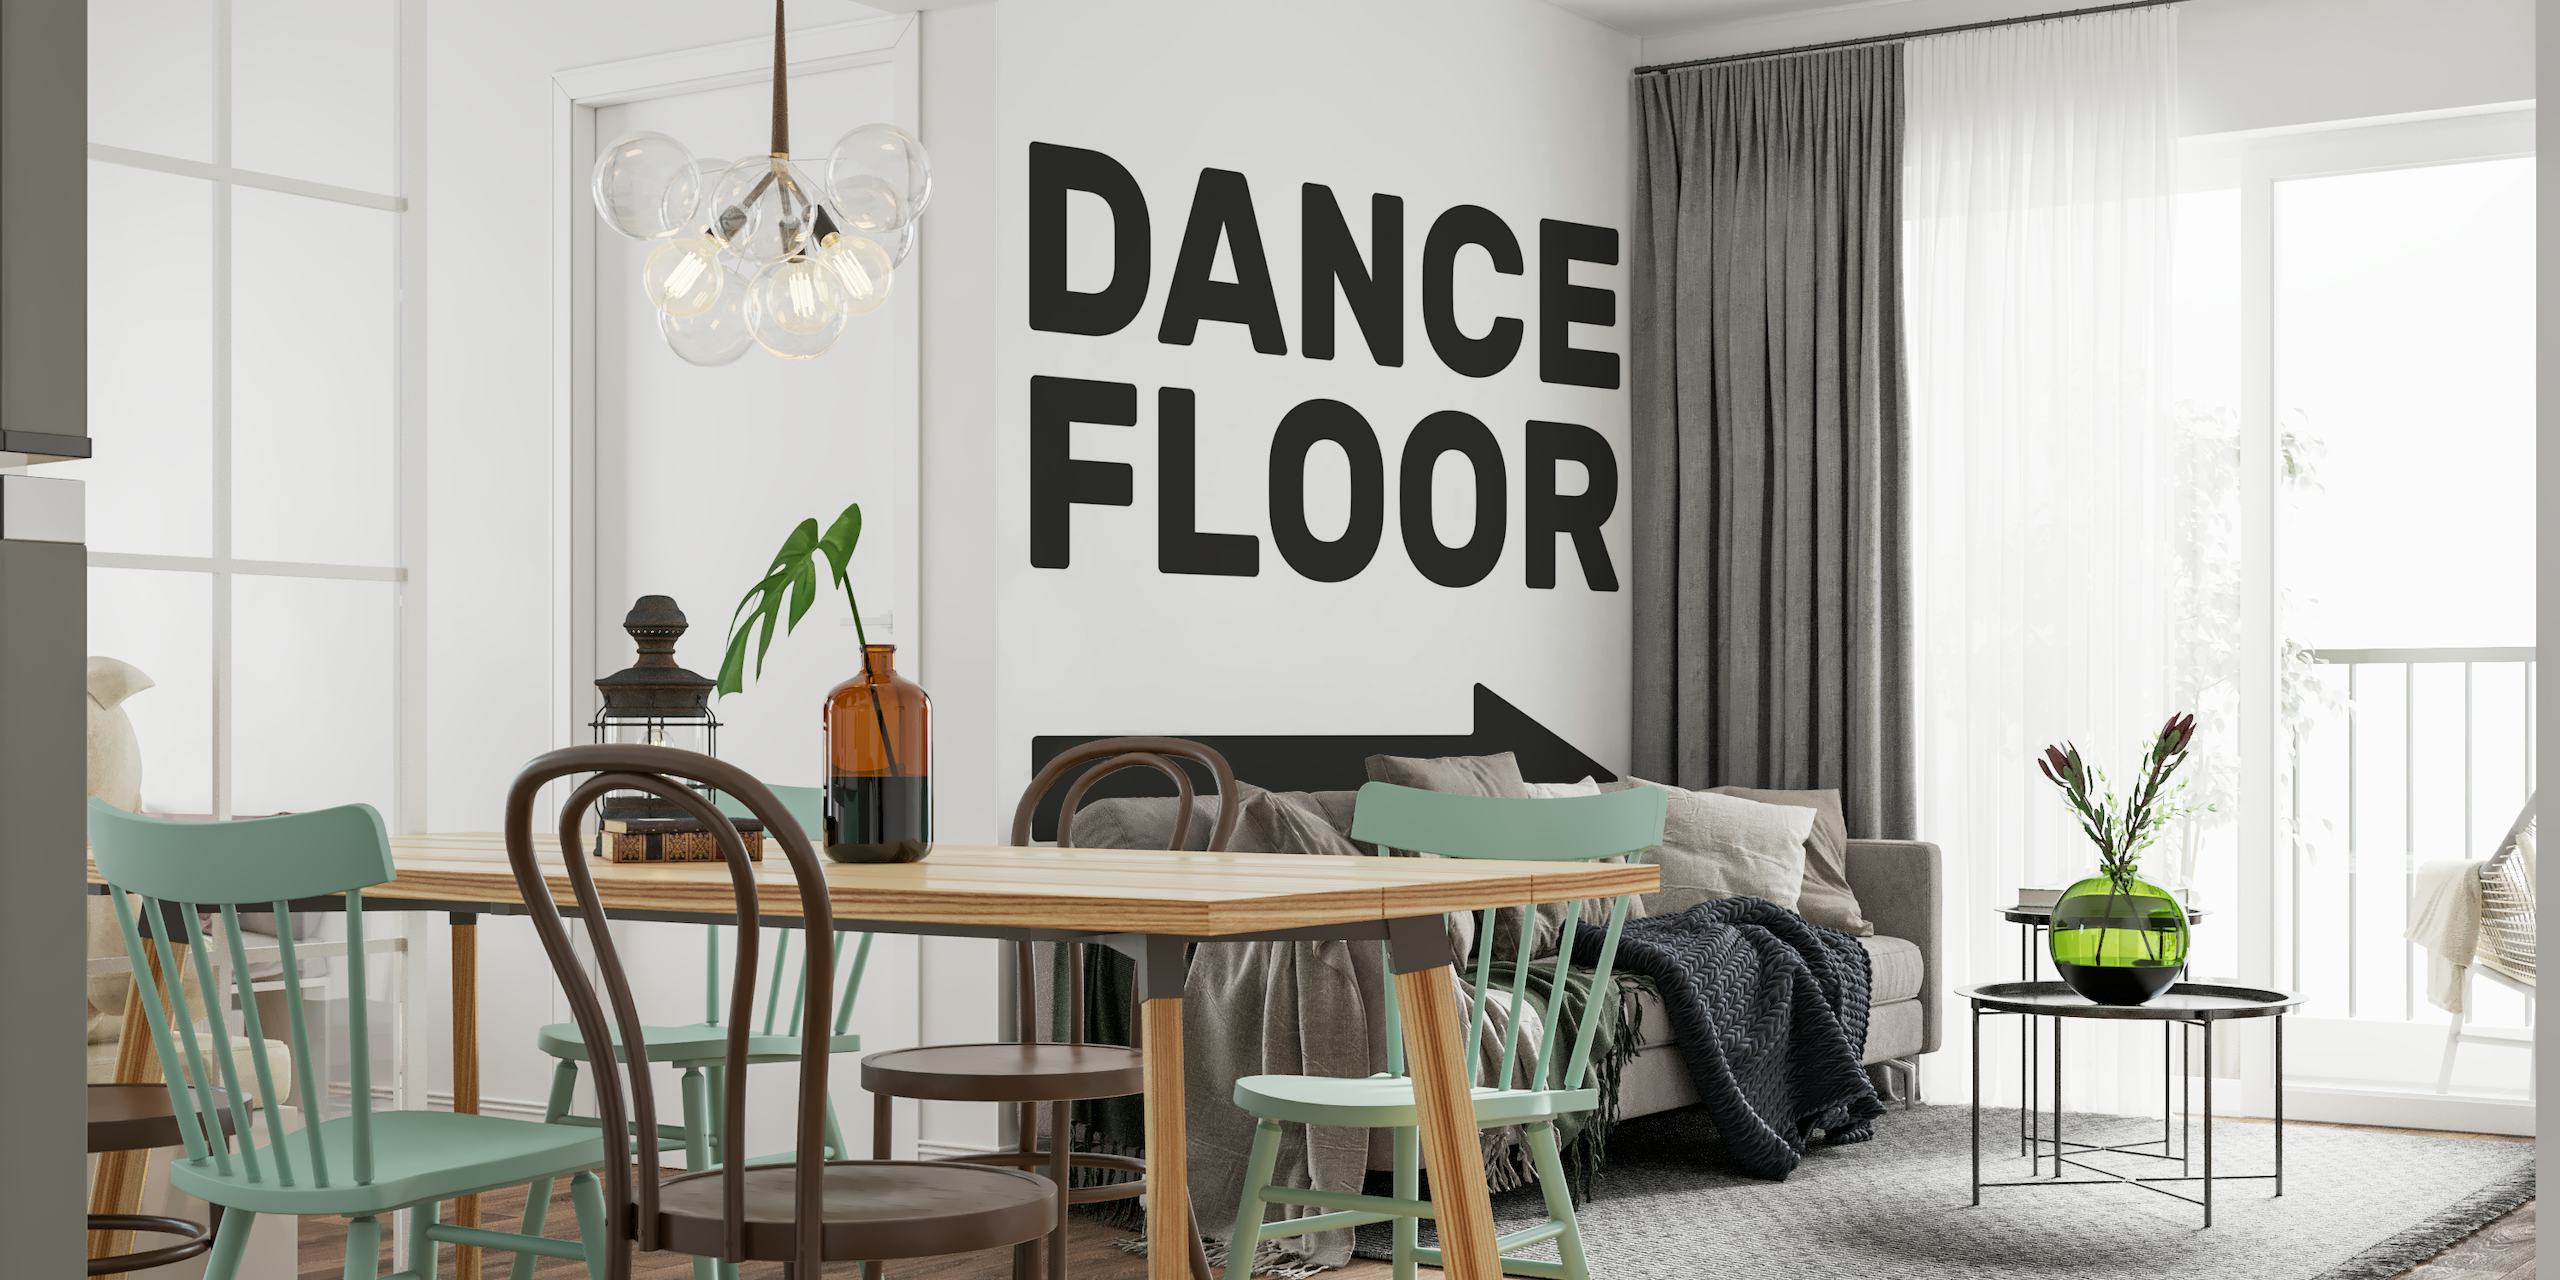 Dance Floor (Right) wallpaper